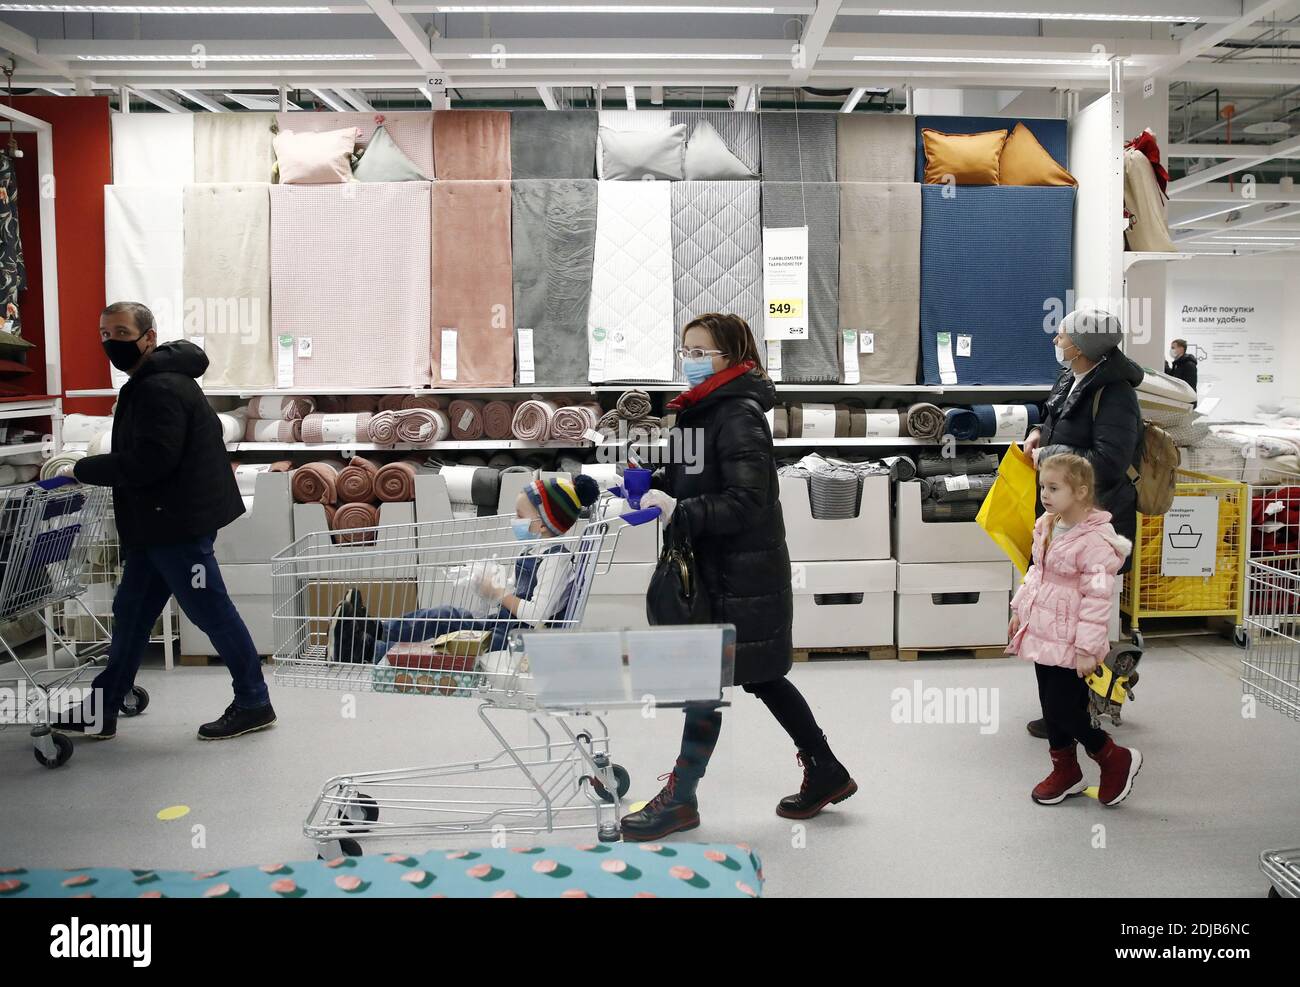 Mosca, Russia. 14 dicembre 2020. I clienti visitano un negozio IKEA City  durante la sua apertura al centro commerciale Yevropolis di Mosca. Il  negozio offre la gamma completa di articoli venduti presso